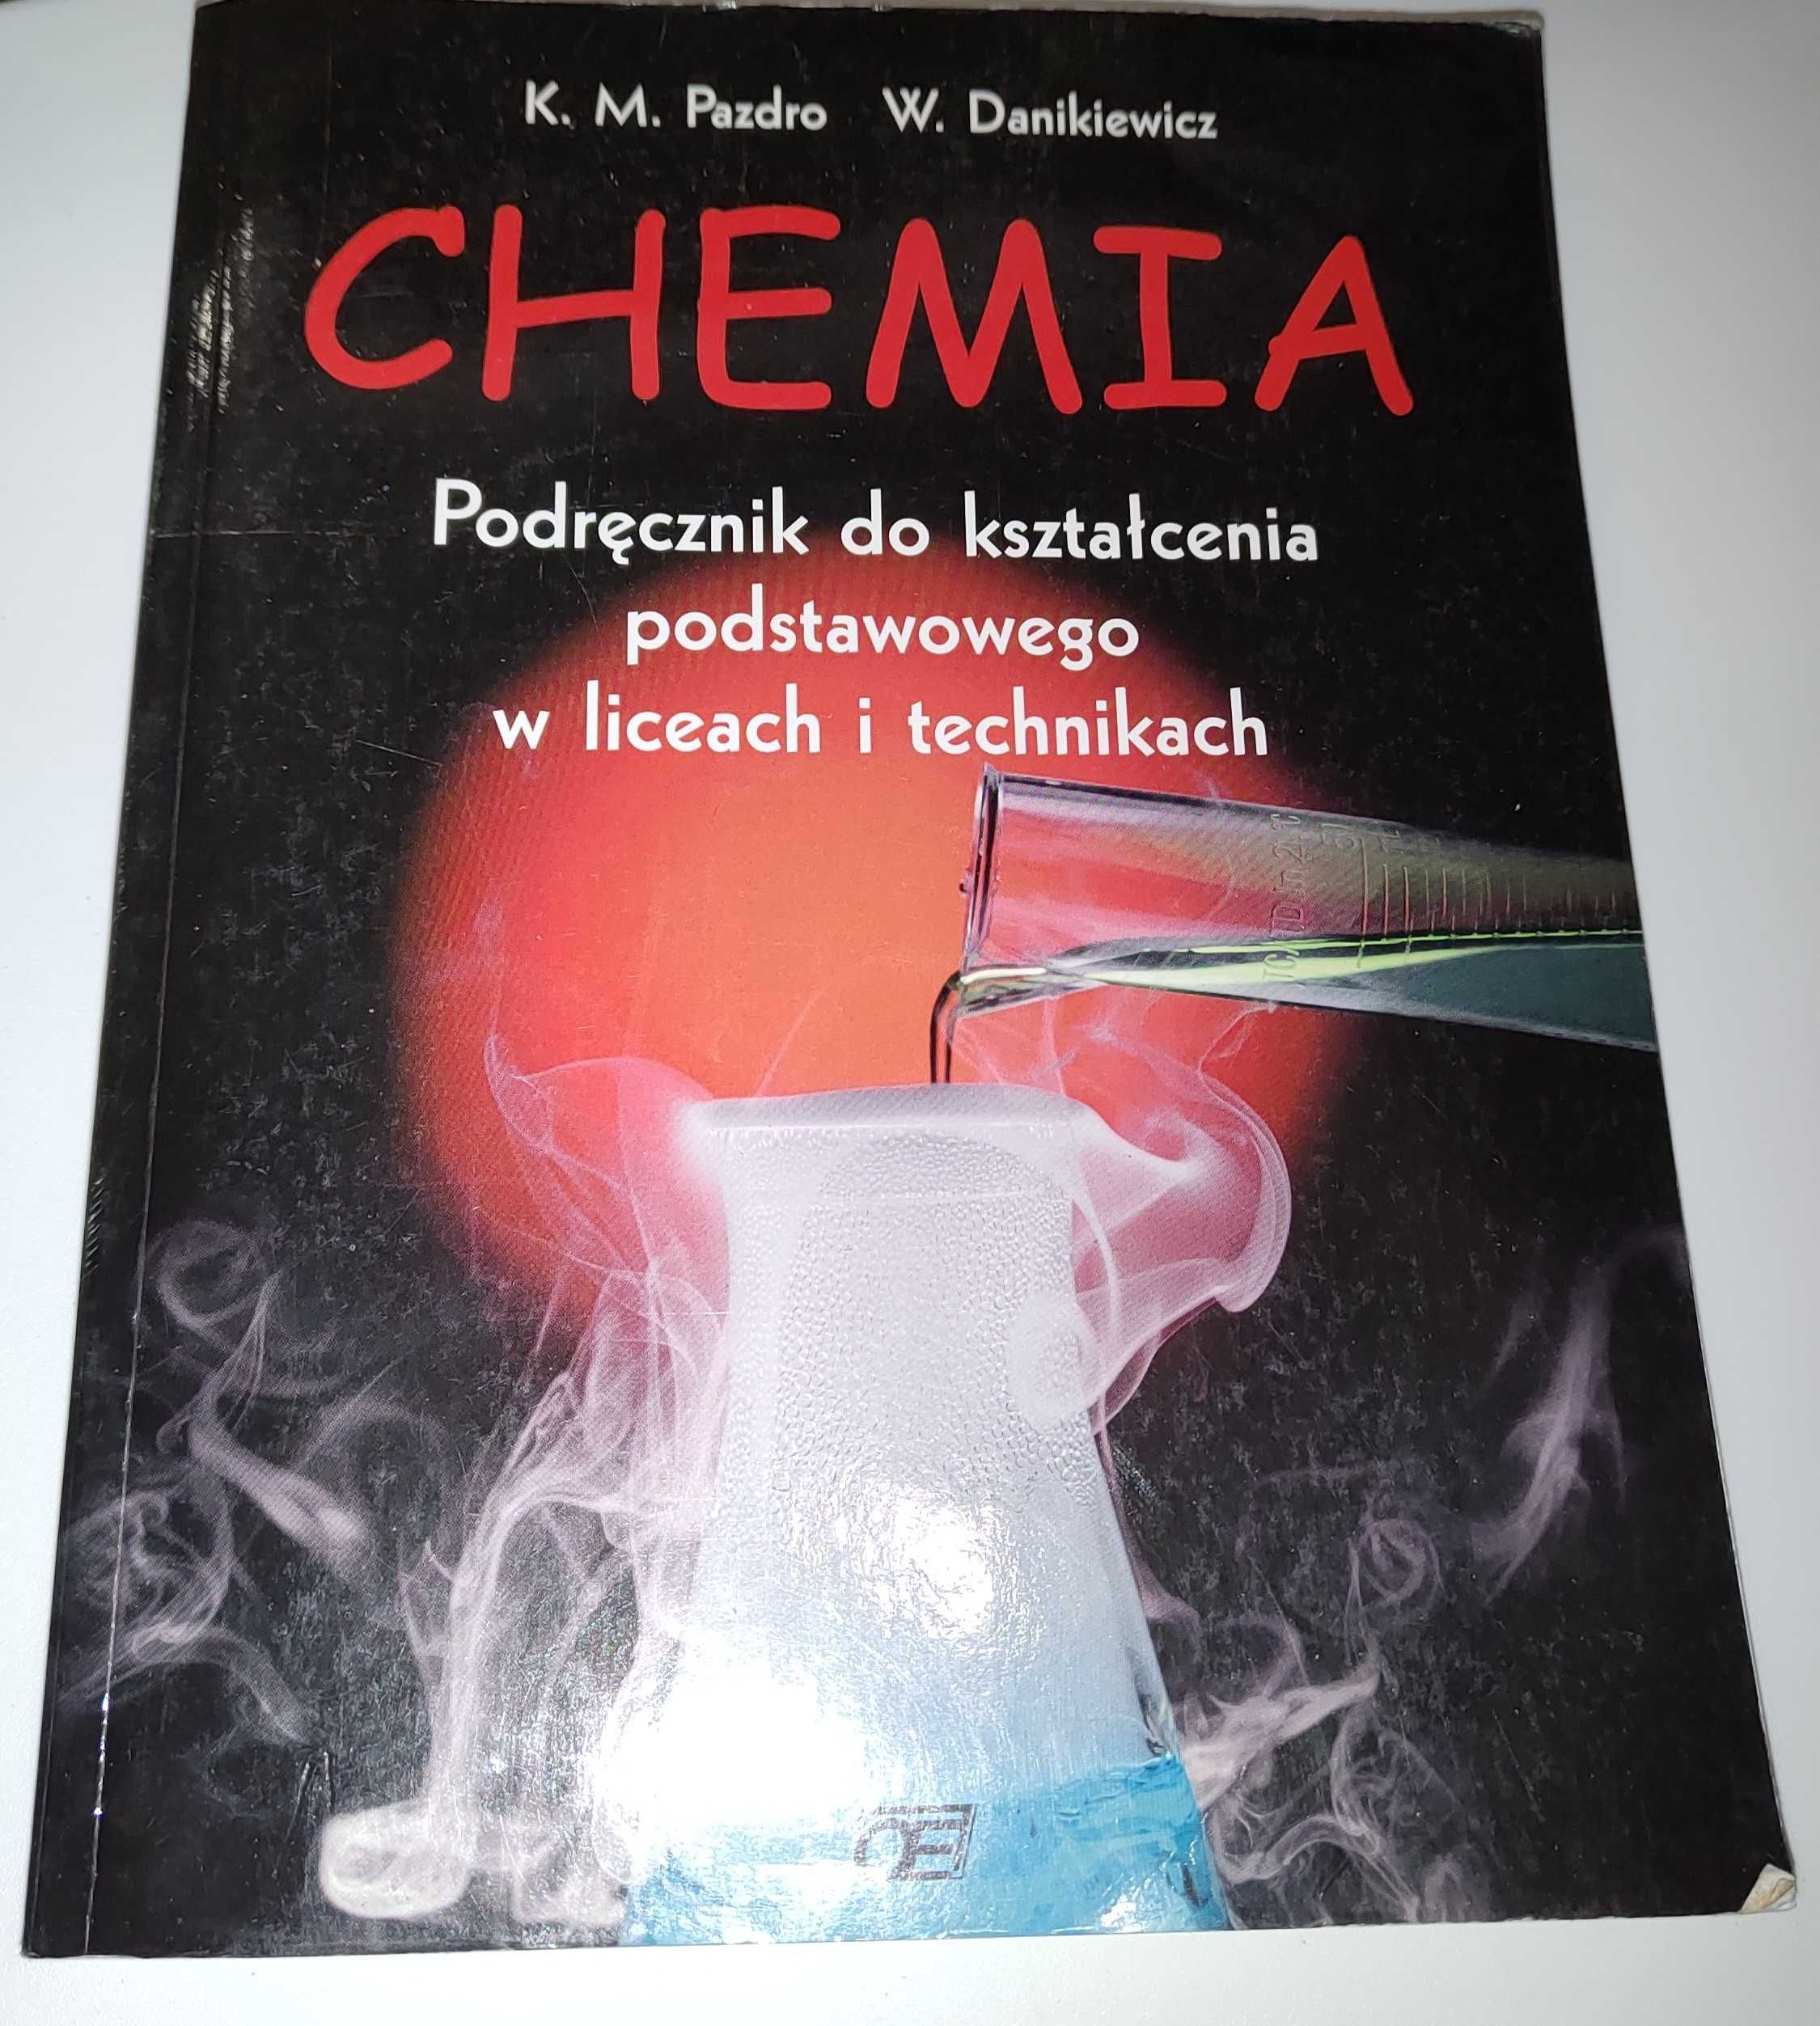 Chemia Podręcznik Pazdro Panikiewicz